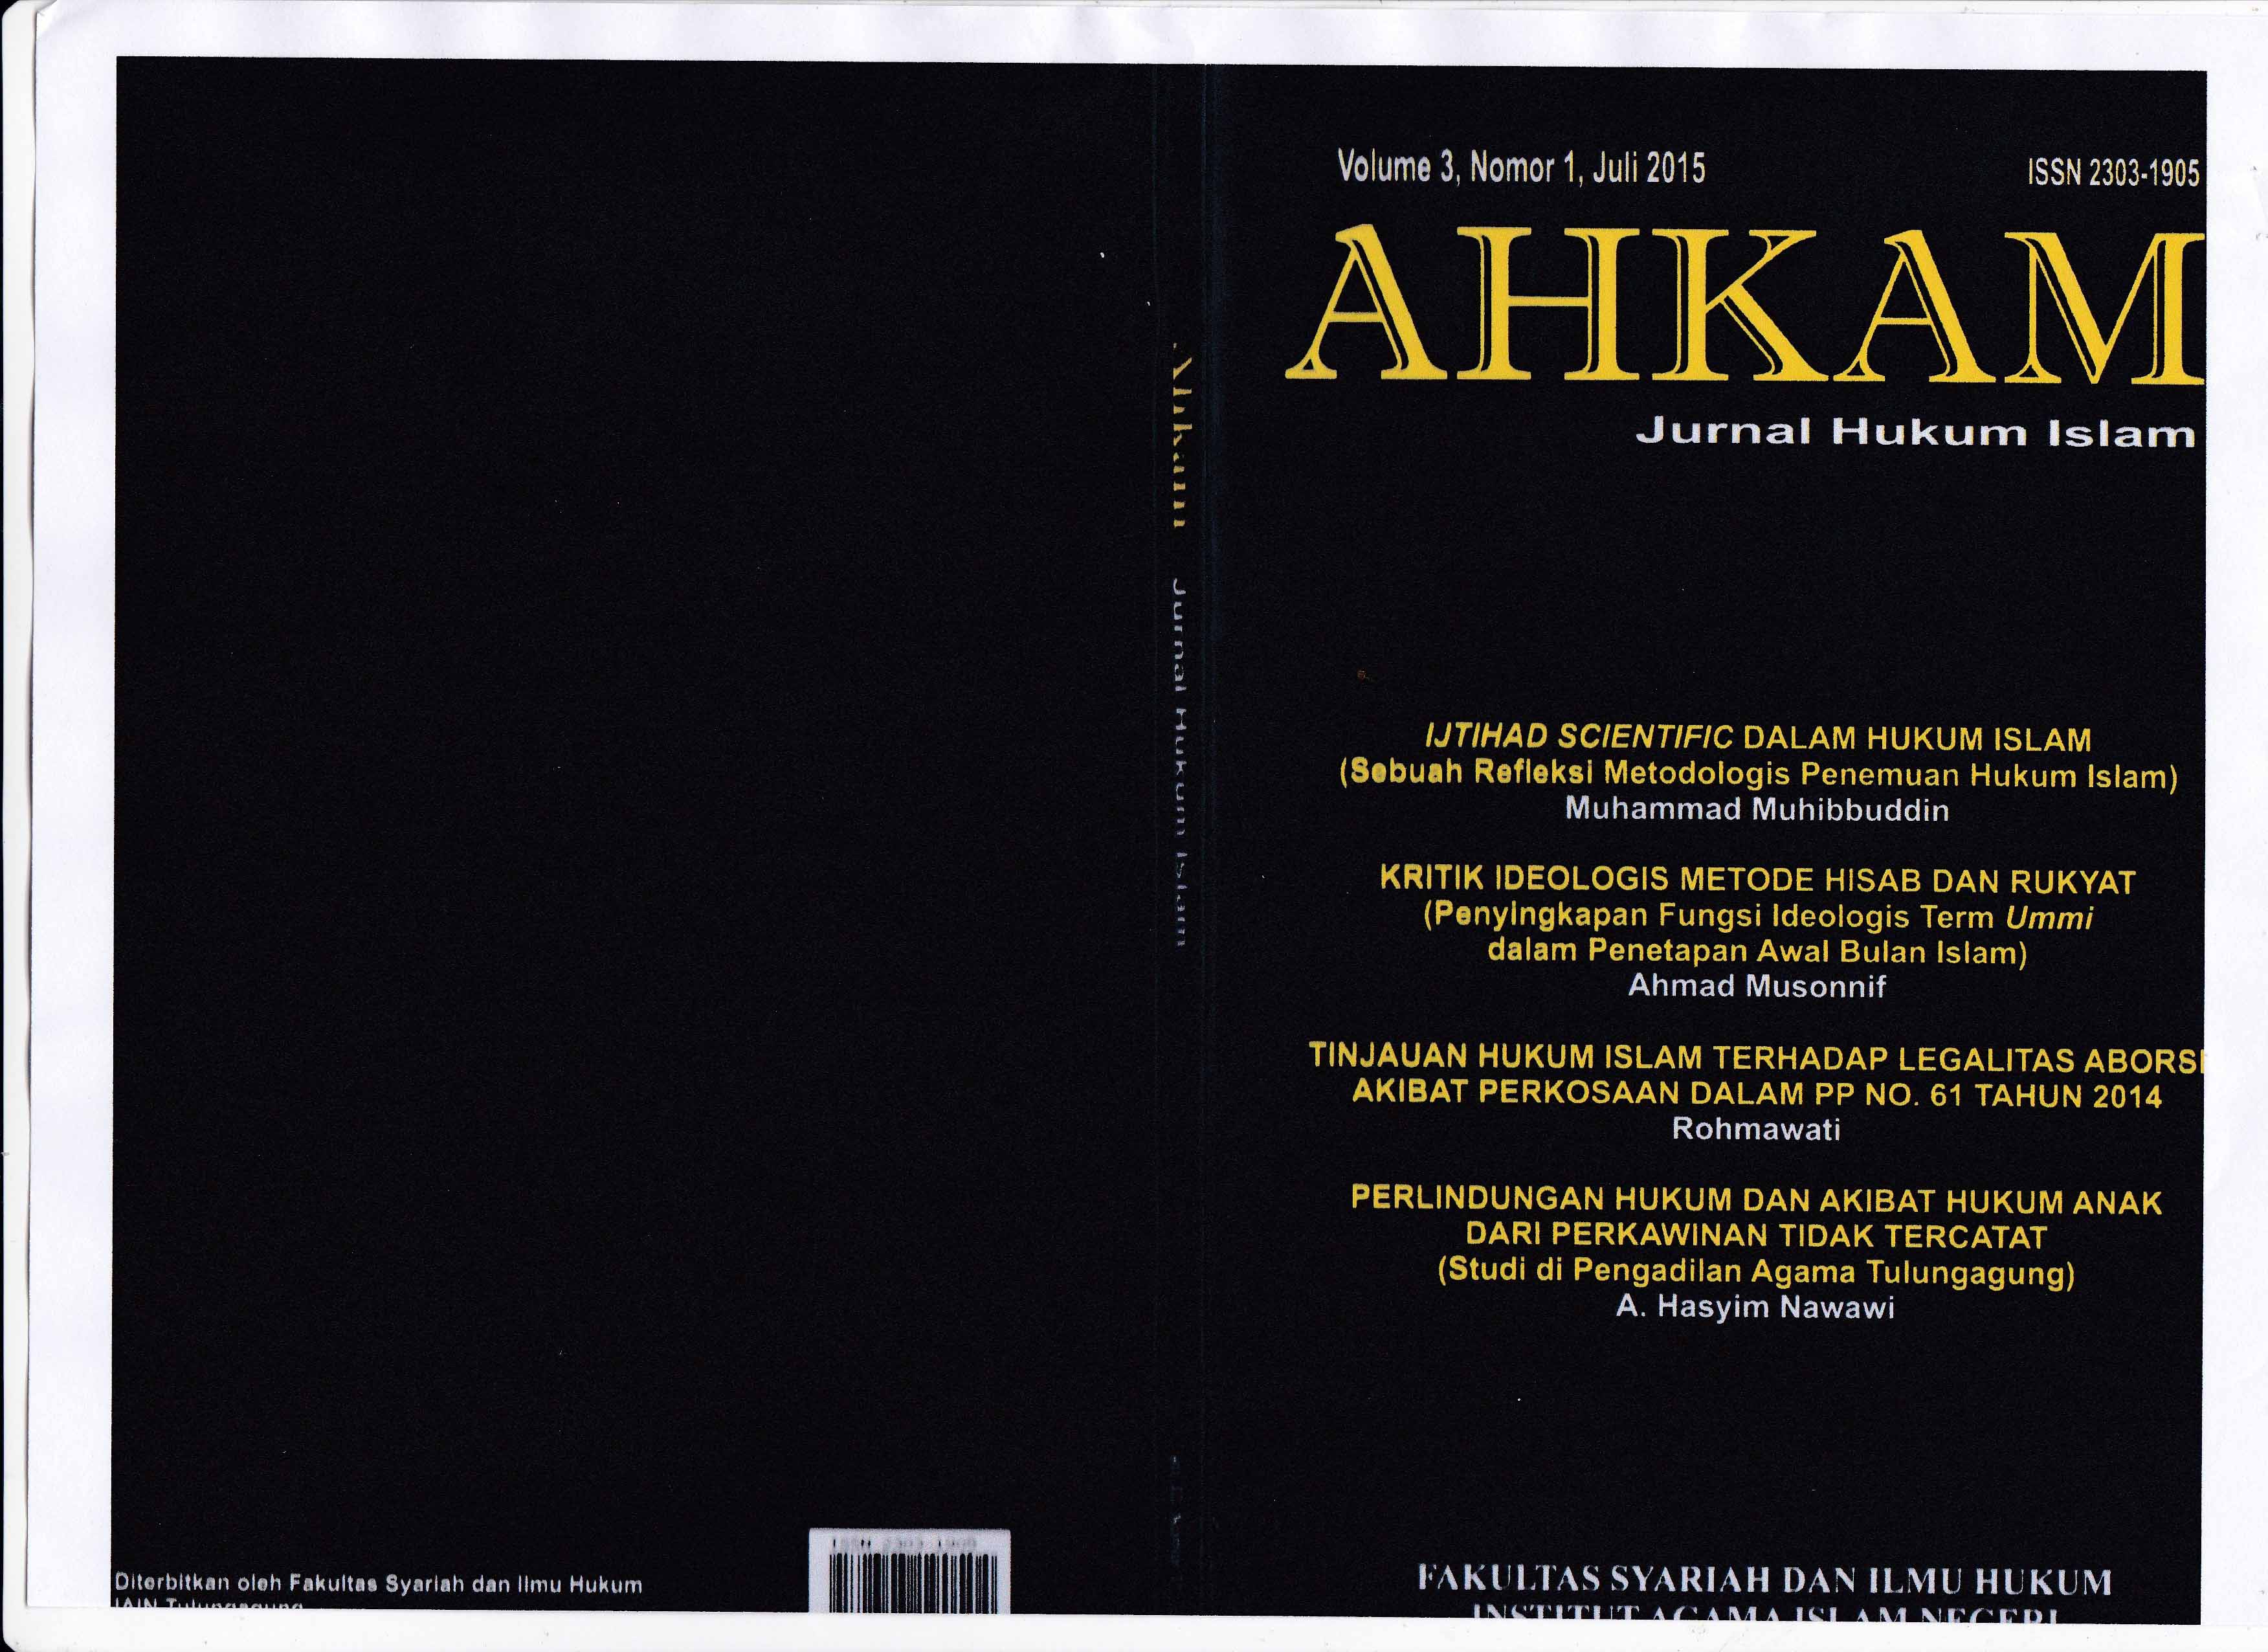 Ahkam Vol 3 No.1 Juli 2015